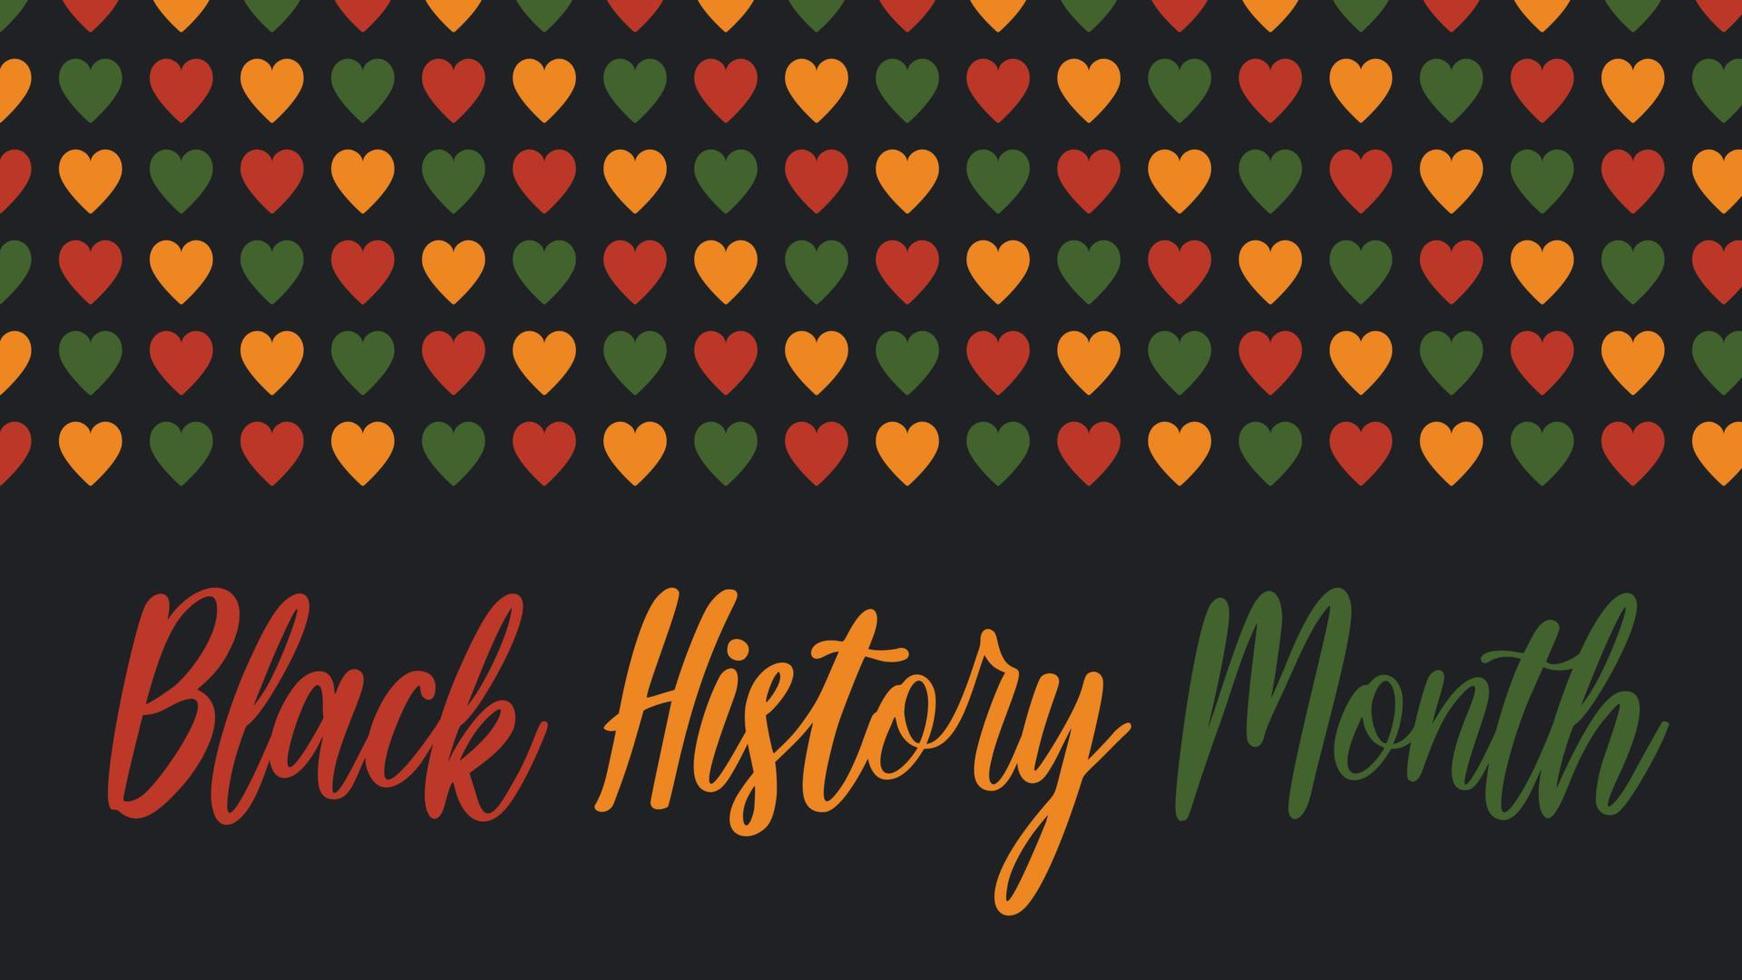 vektor banner svart historia månad - firande i usa, afrikansk amerikansk månad logotyp. mönster med hjärtan i afrikanska färger - röd, grön, gul på svart bakgrund